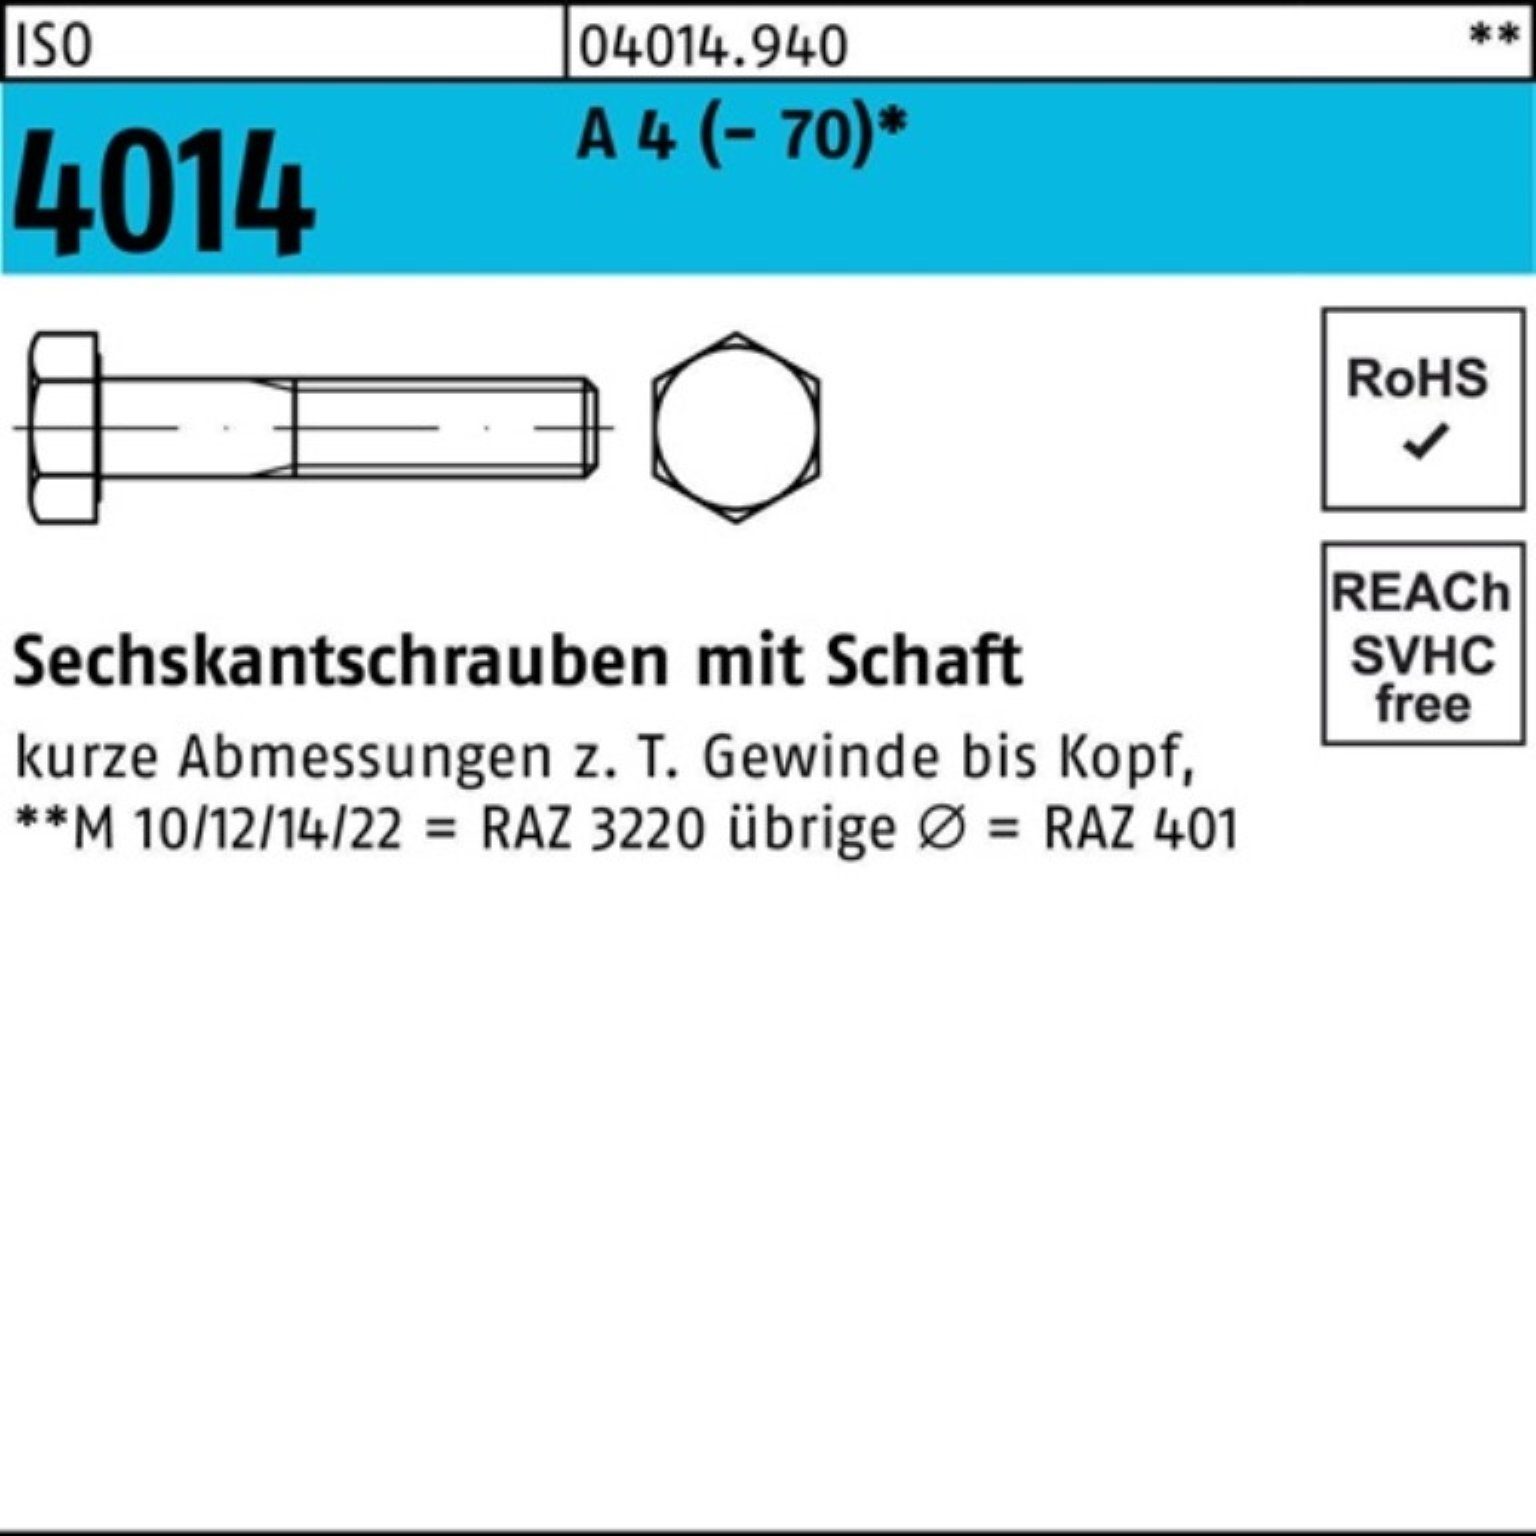 4014 1 Sechskantschraube (70) Bufab Sechskantschraube 100er Stü M8x ISO 180 Pack A 4 Schaft